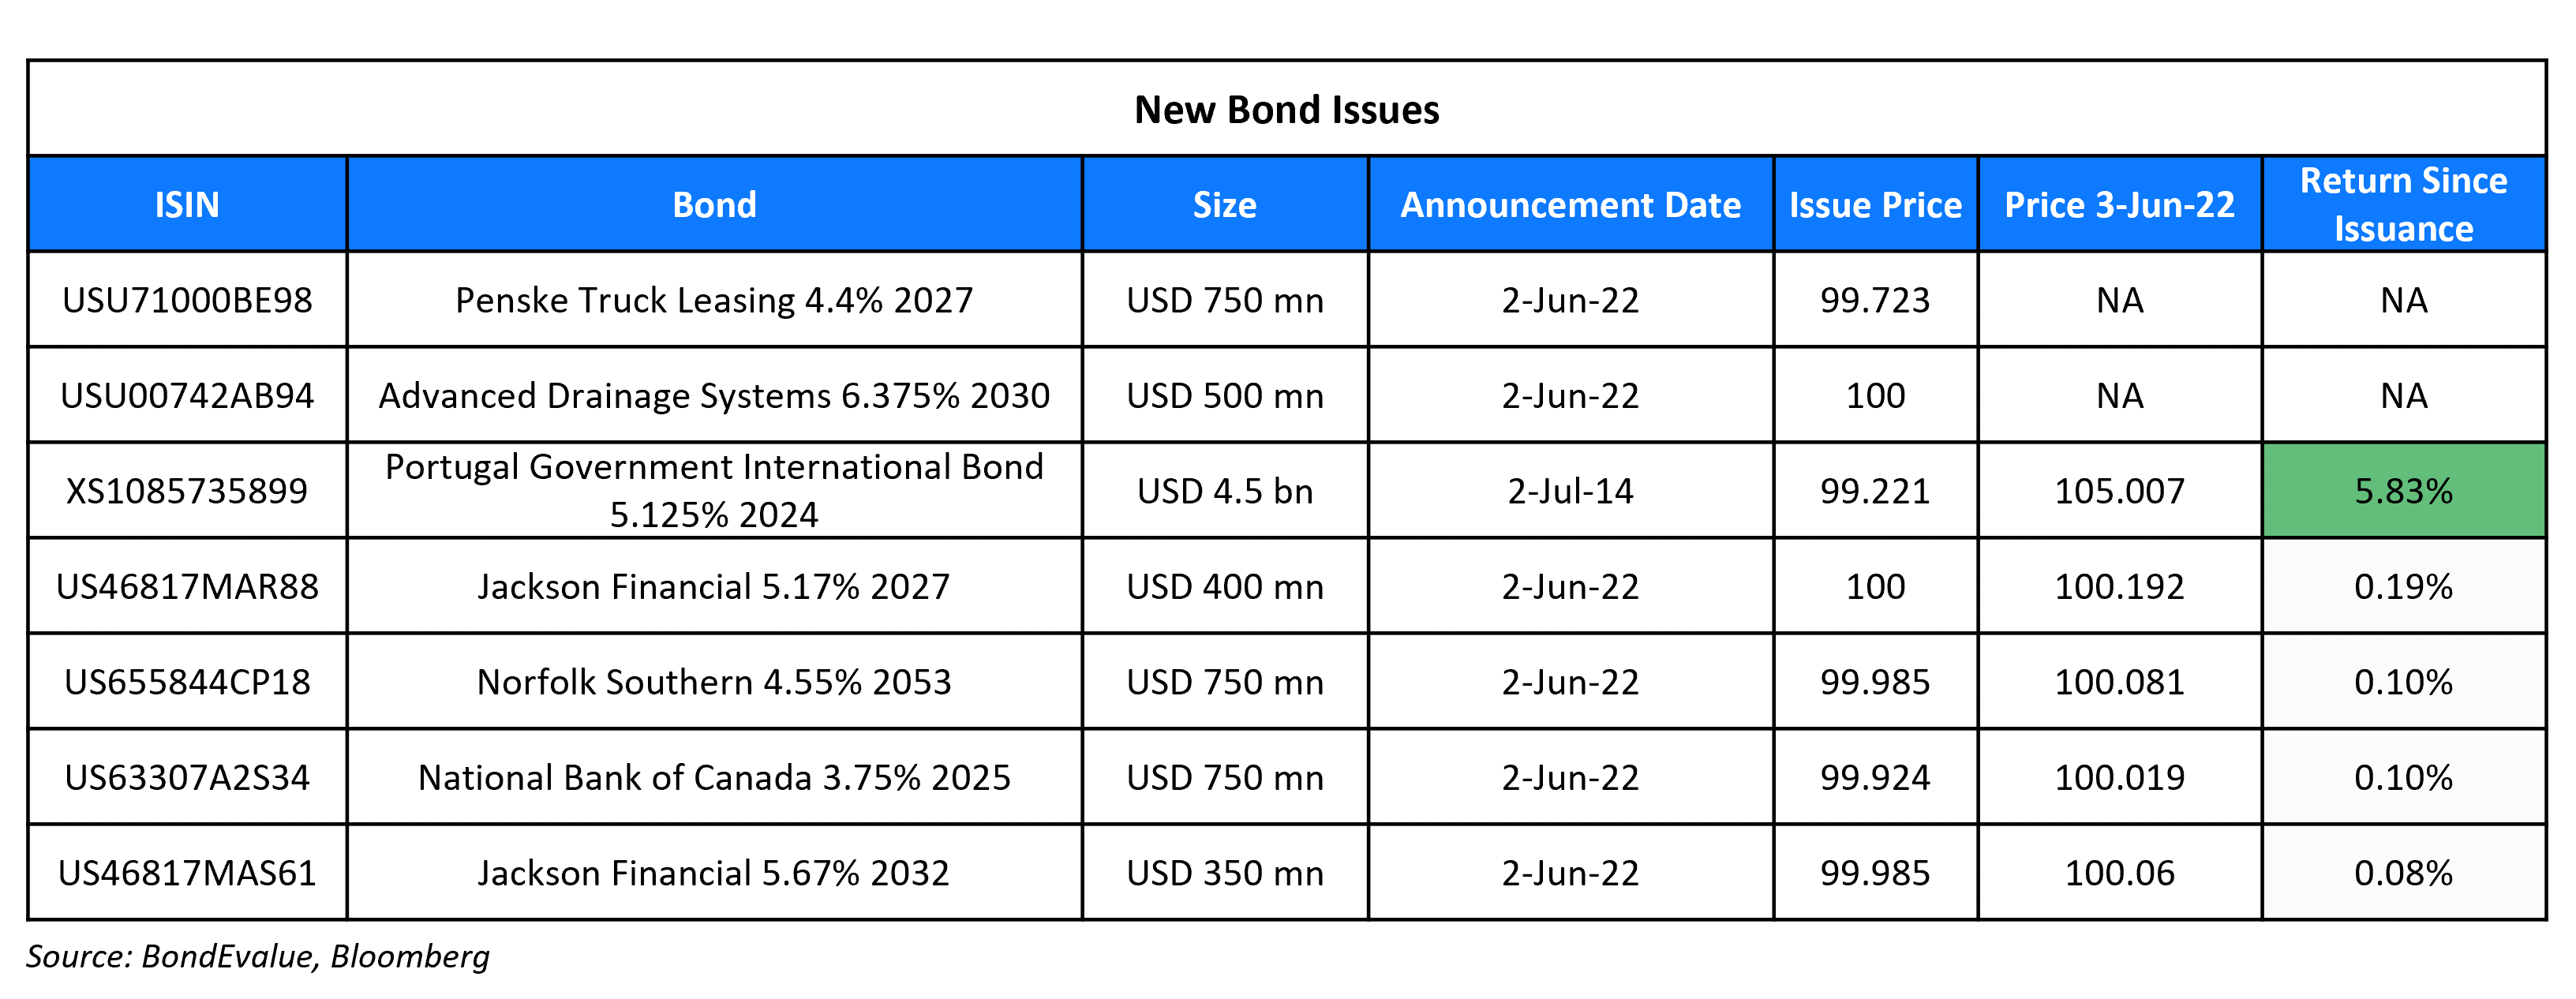 New Bond Issues 3 Jun 22